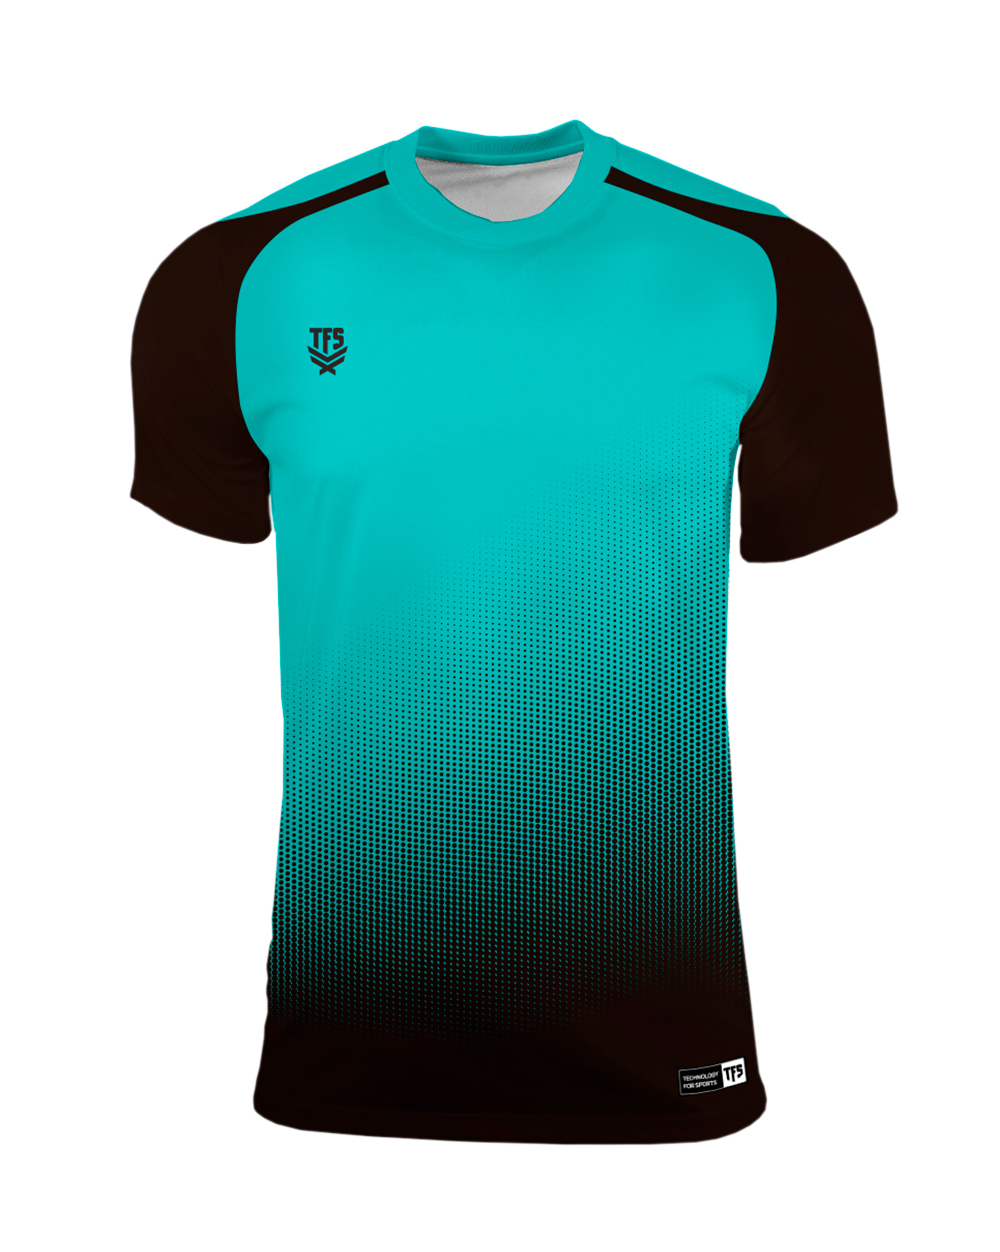 tempo toque Fiel Camiseta Futbol TFS Holanda - - Camisetas